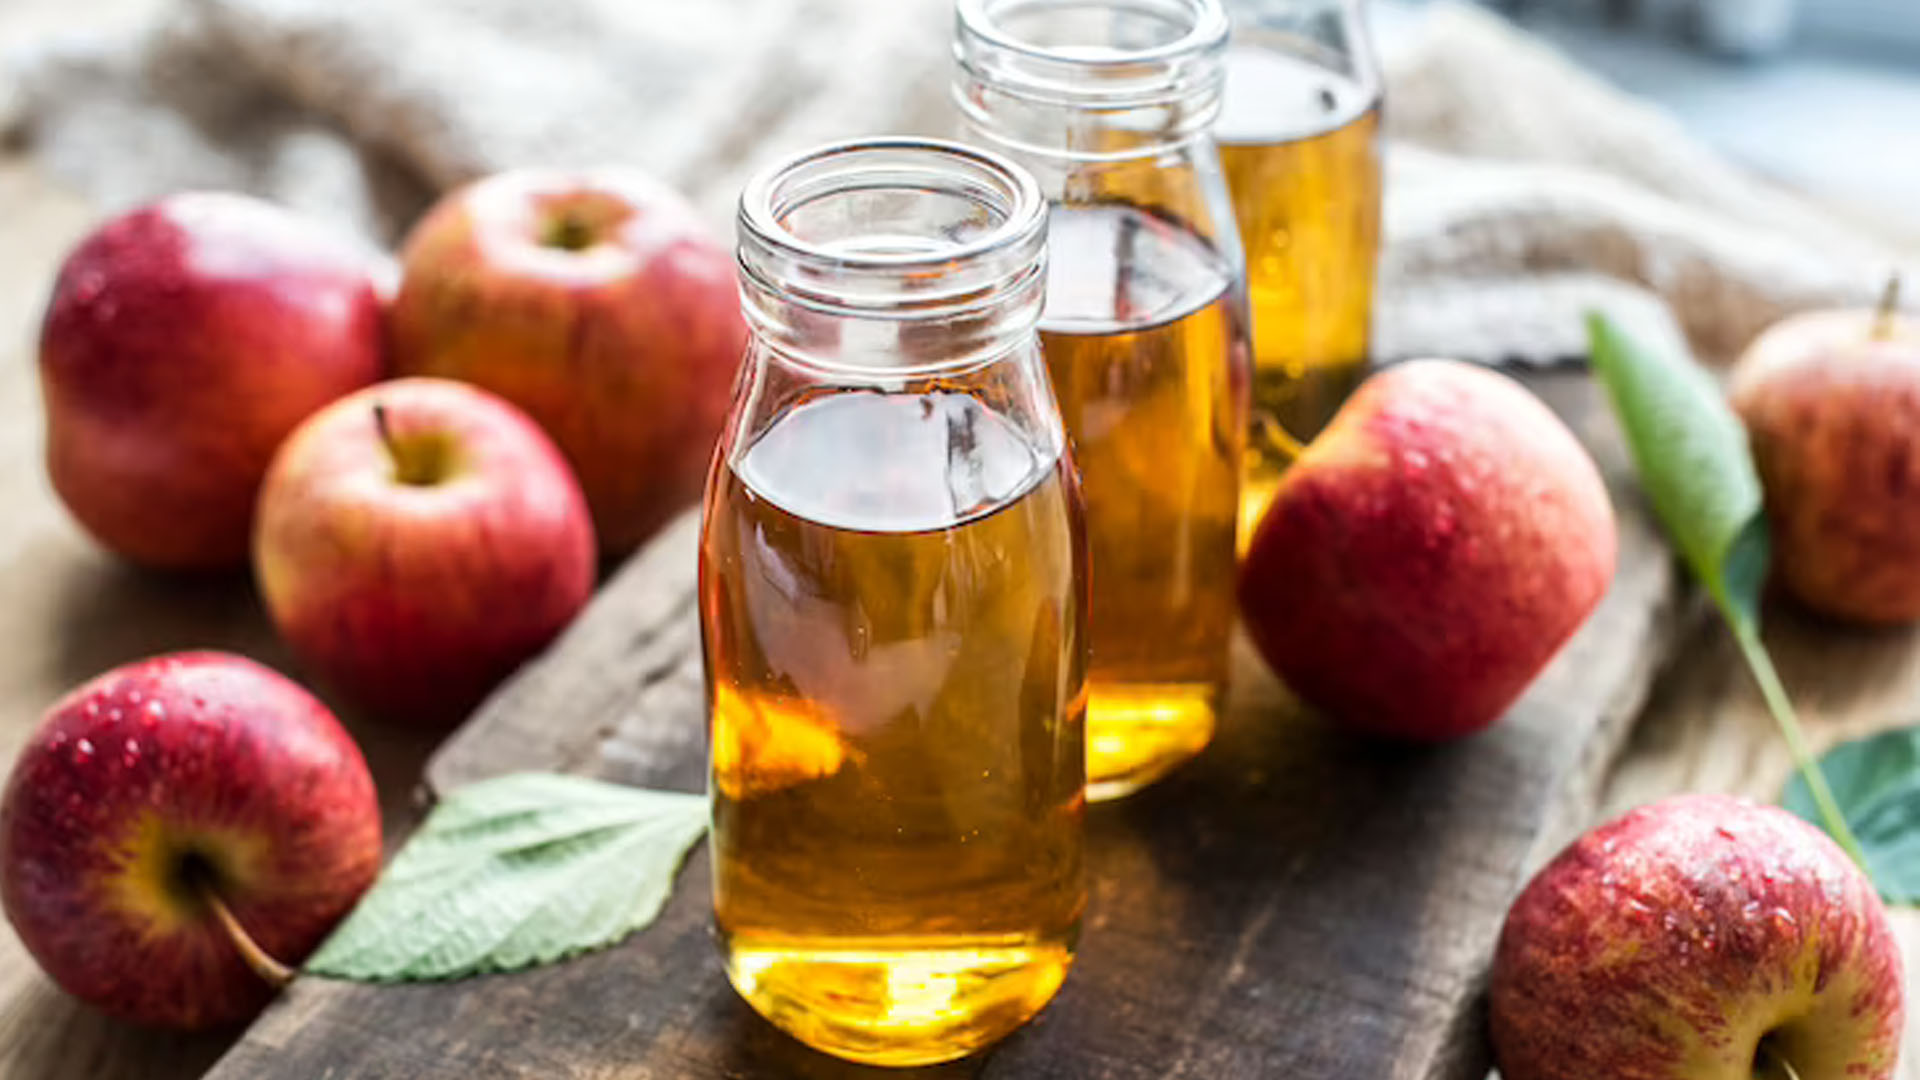 Does Filtered ACV (Apple Cider Vinegar) Have Health Benefits?